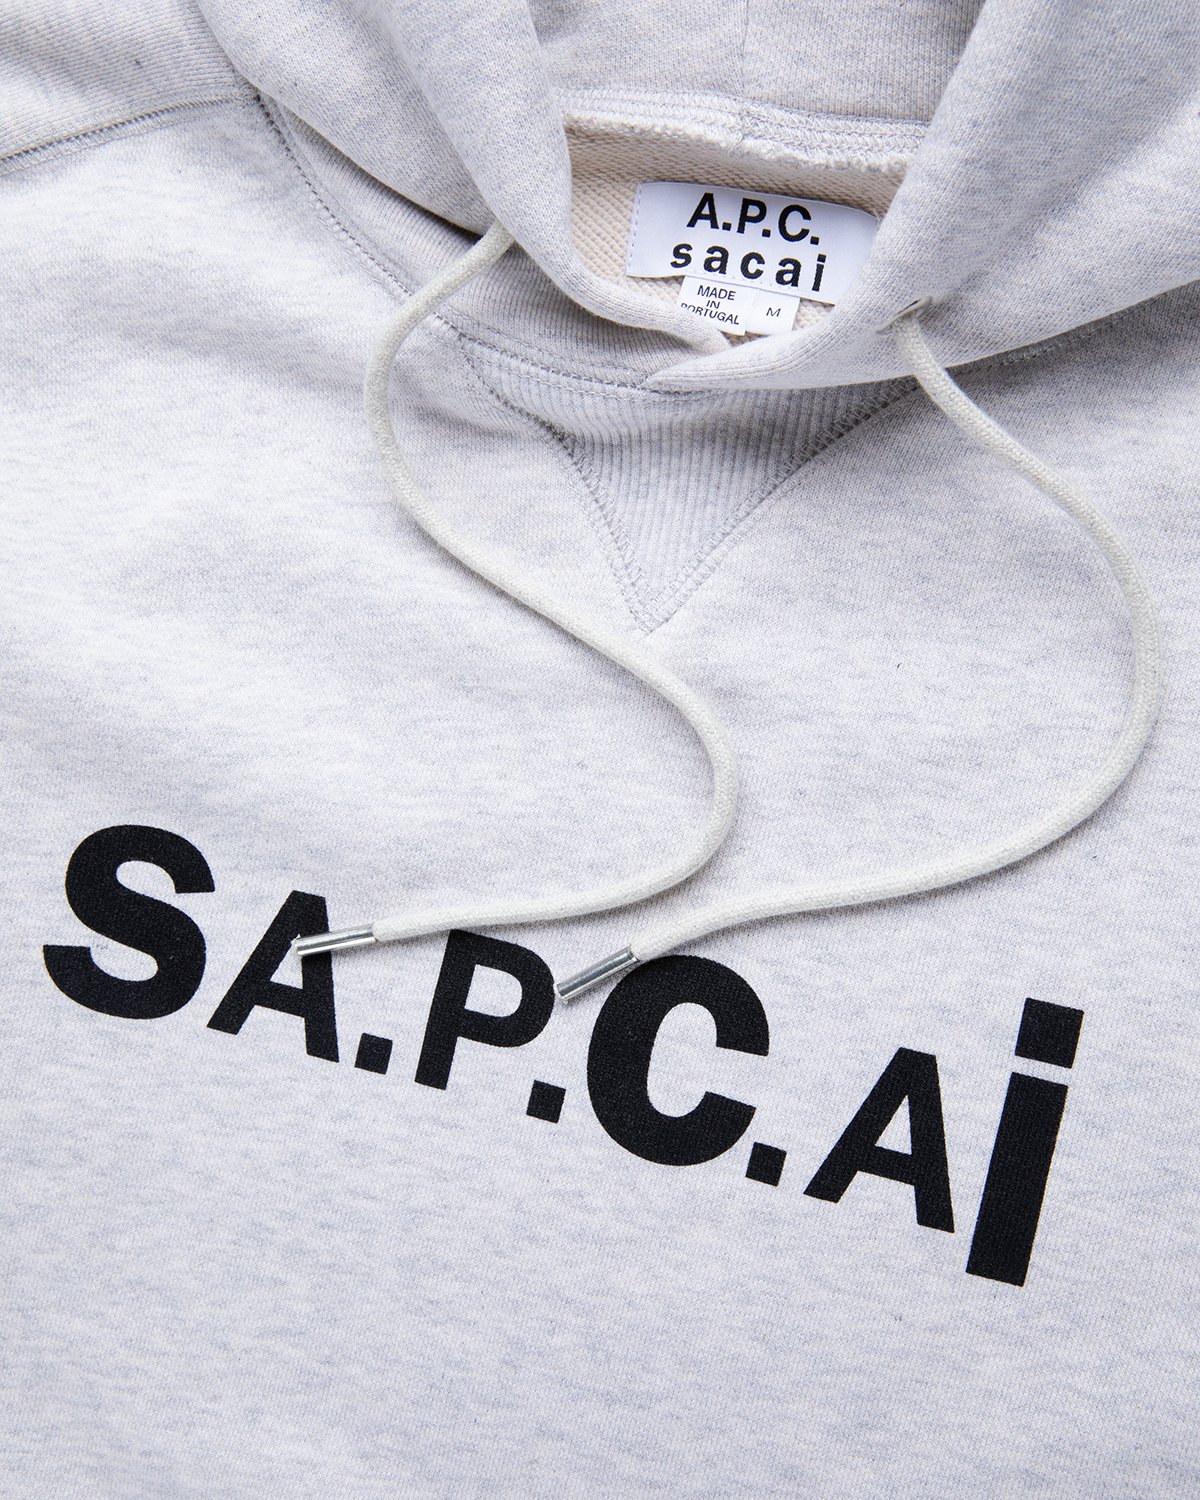 A.P.C. x Sacai - Taiyo Hoodie Light Grey - Clothing - Grey - Image 3